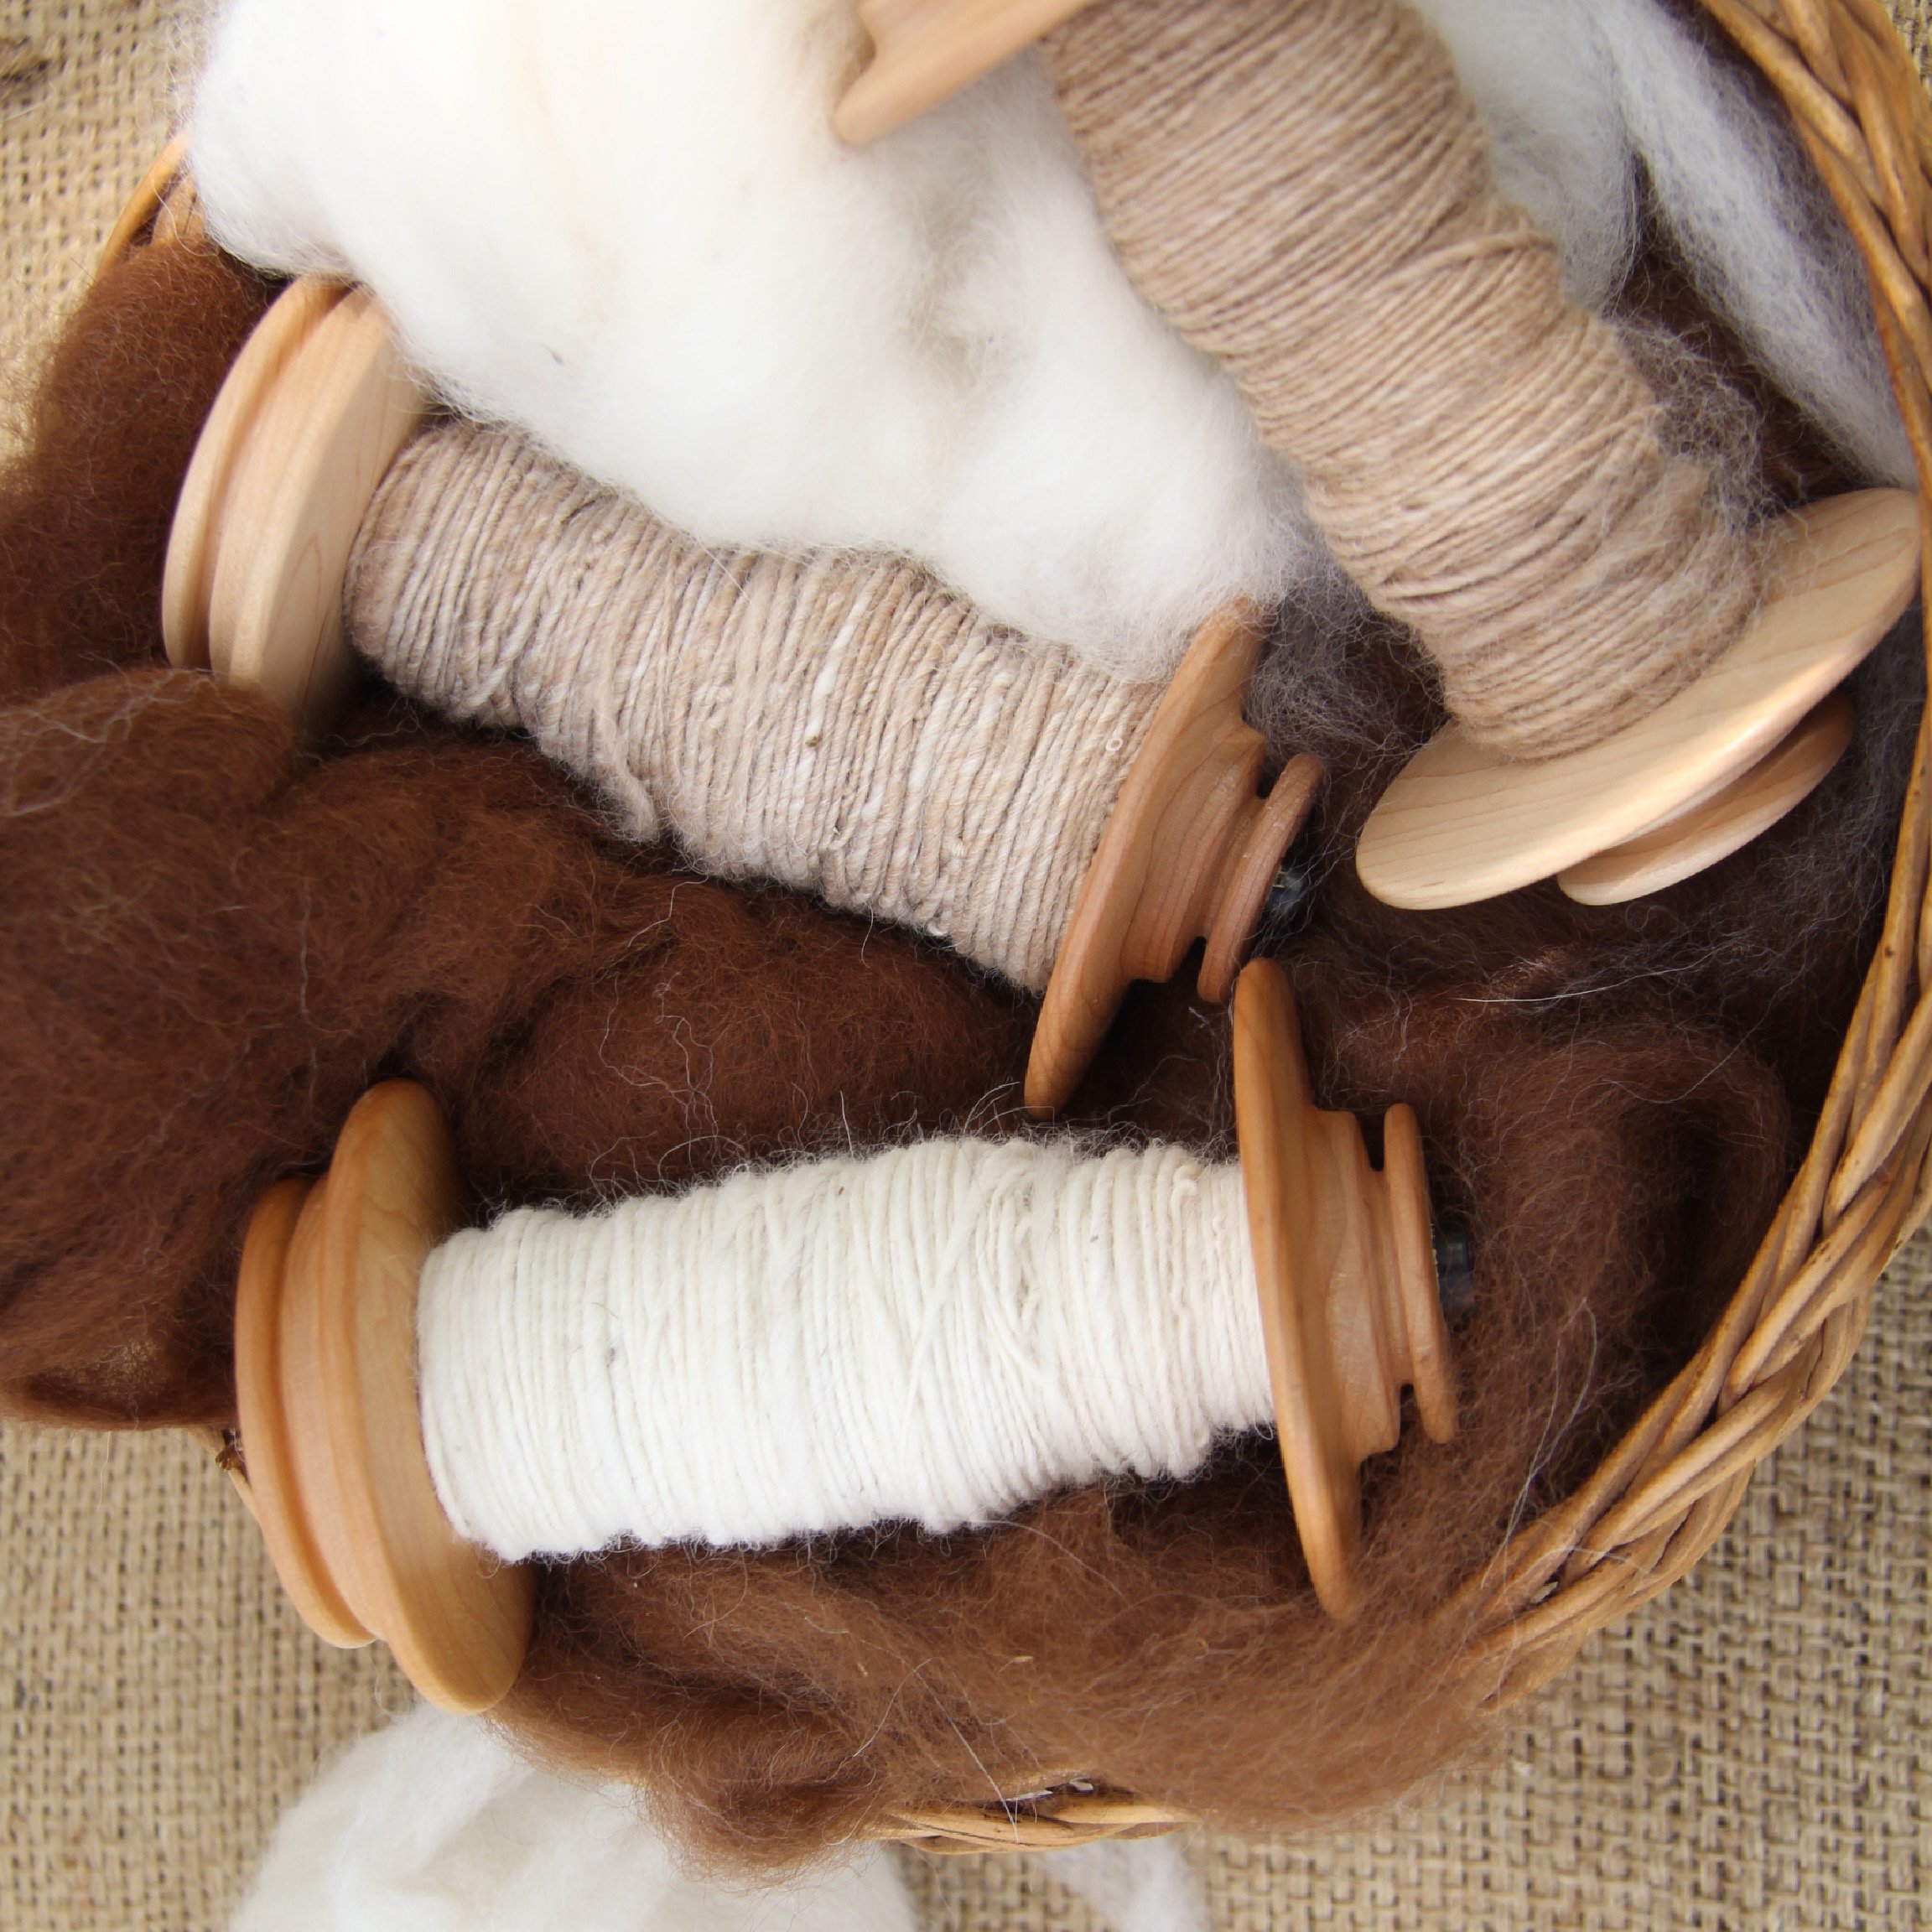 Handspun Yarn, Chocolate Color, Natural Fleece, Jacob Wool, Bulky